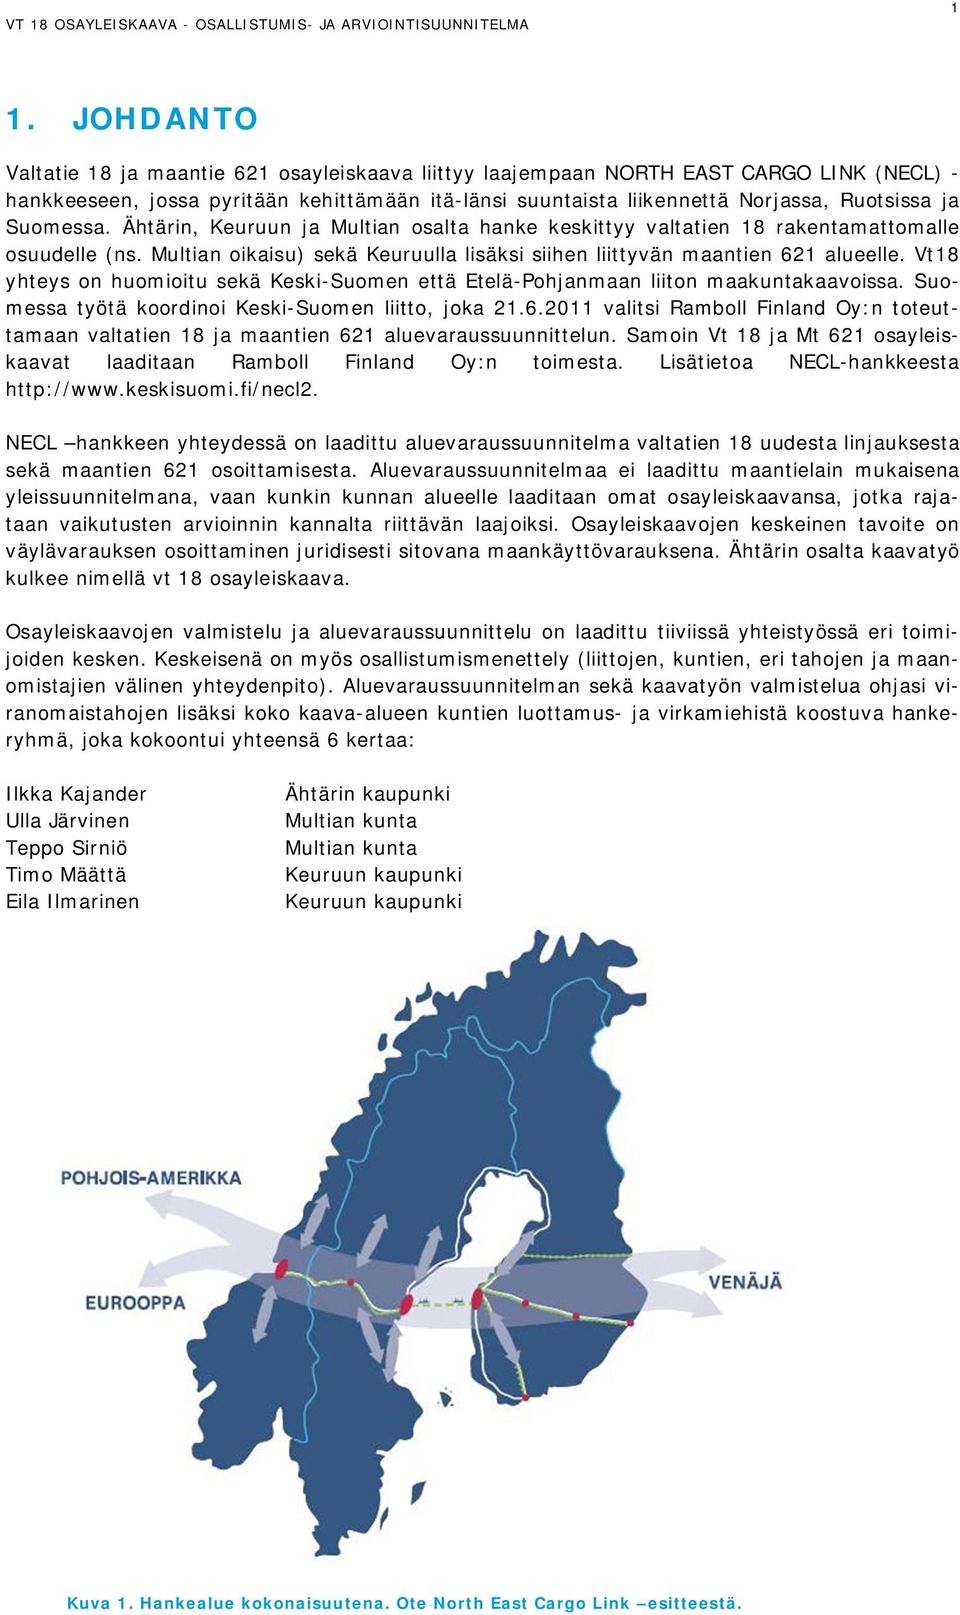 Vt18 yhteys on huomioitu sekä Keski-Suomen että Etelä-Pohjanmaan liiton maakuntakaavoissa. Suomessa työtä koordinoi Keski-Suomen liitto, joka 21.6.